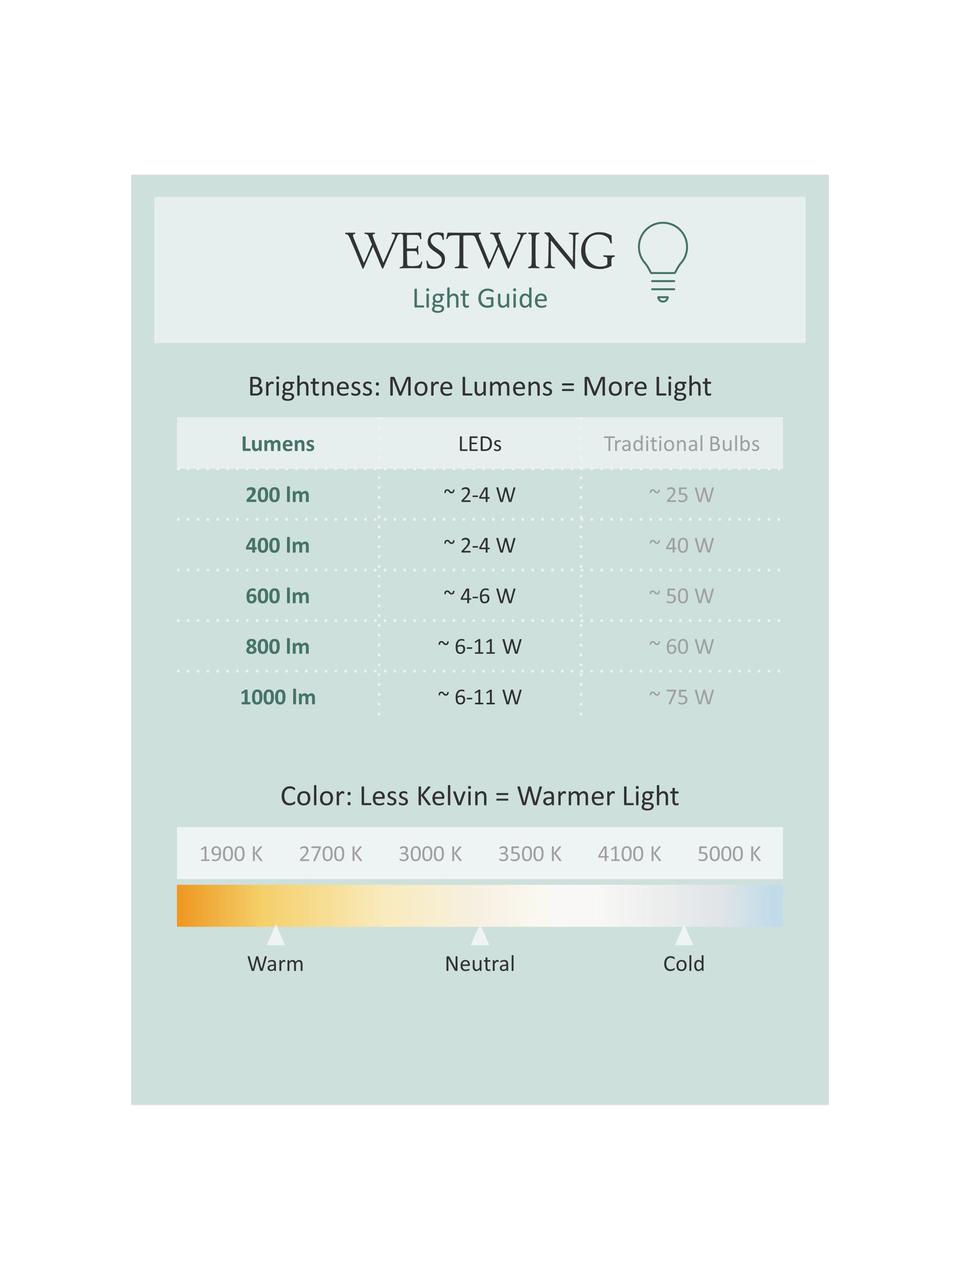 Velké stmívatelné závěsné LED svítidlo Elowen, různé velikosti, Černá, Ø 80 cm, V 5 cm